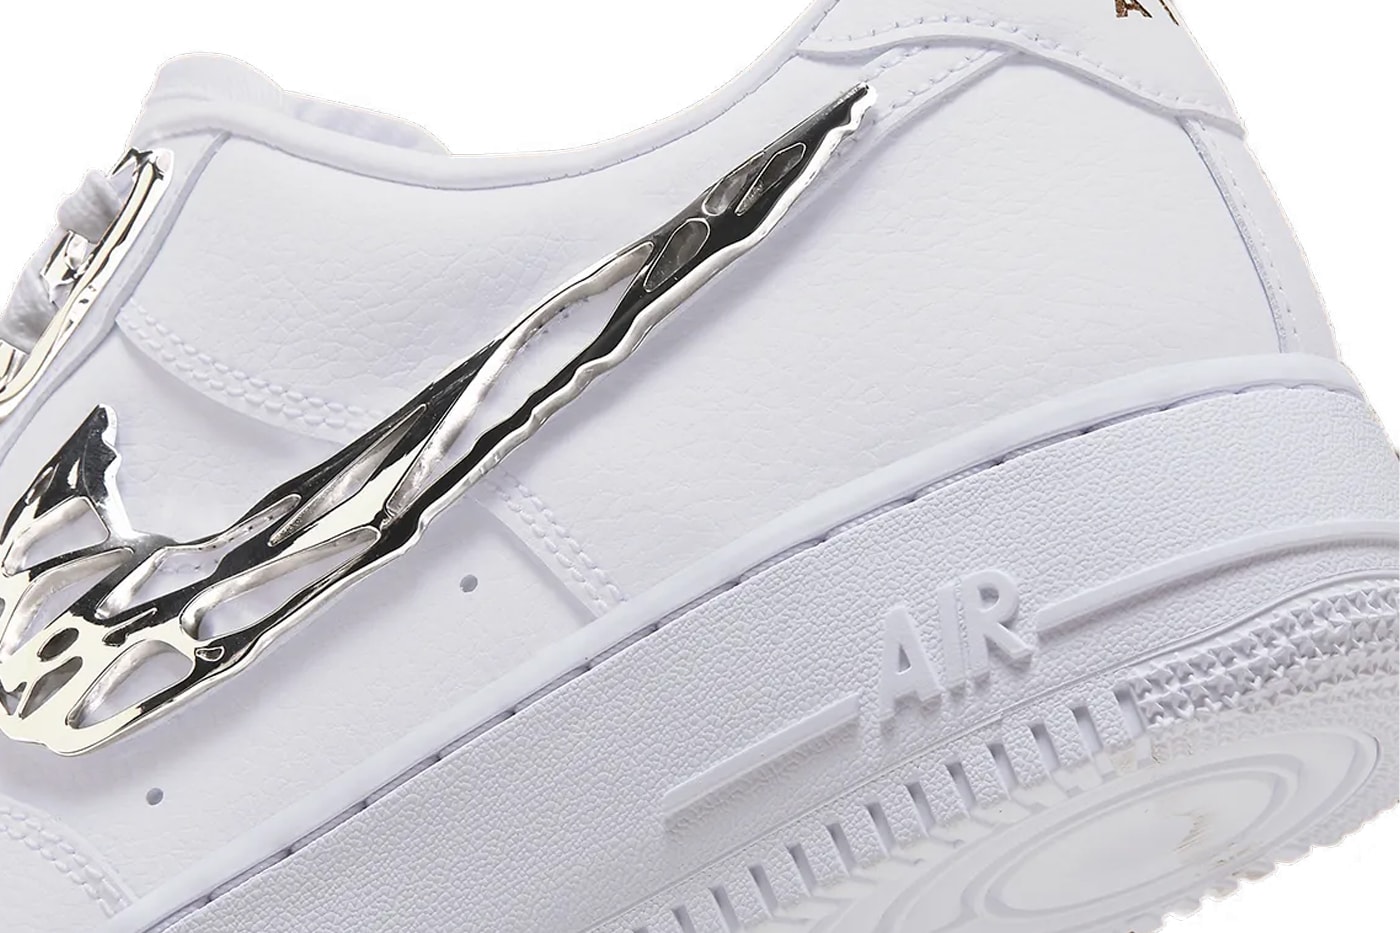 ナイキからシルバーアクセサリーのようなスウッシュが目を惹く新作エアフォース1が登場 Nike Air Force 1 "Molten Metal" Is Adorned in Silver Details Release Info silver buckles swoosh